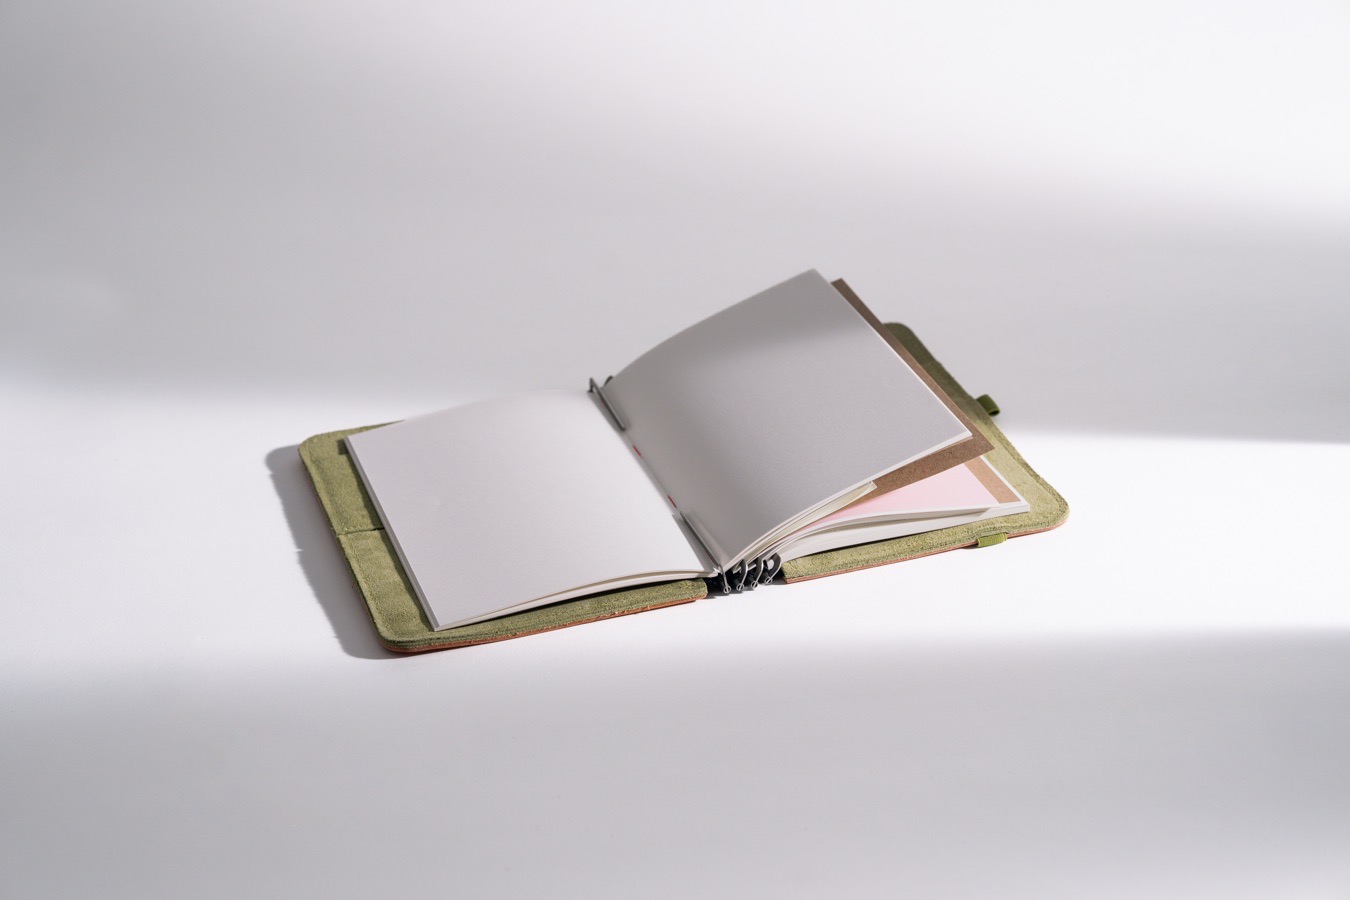 Fadengeheftetes Notizbuch mit festem Recyclingkarton-Einband, erhältlich in verschiedenen Größen, Punktraster und Blanko. Naturweißes Papier.